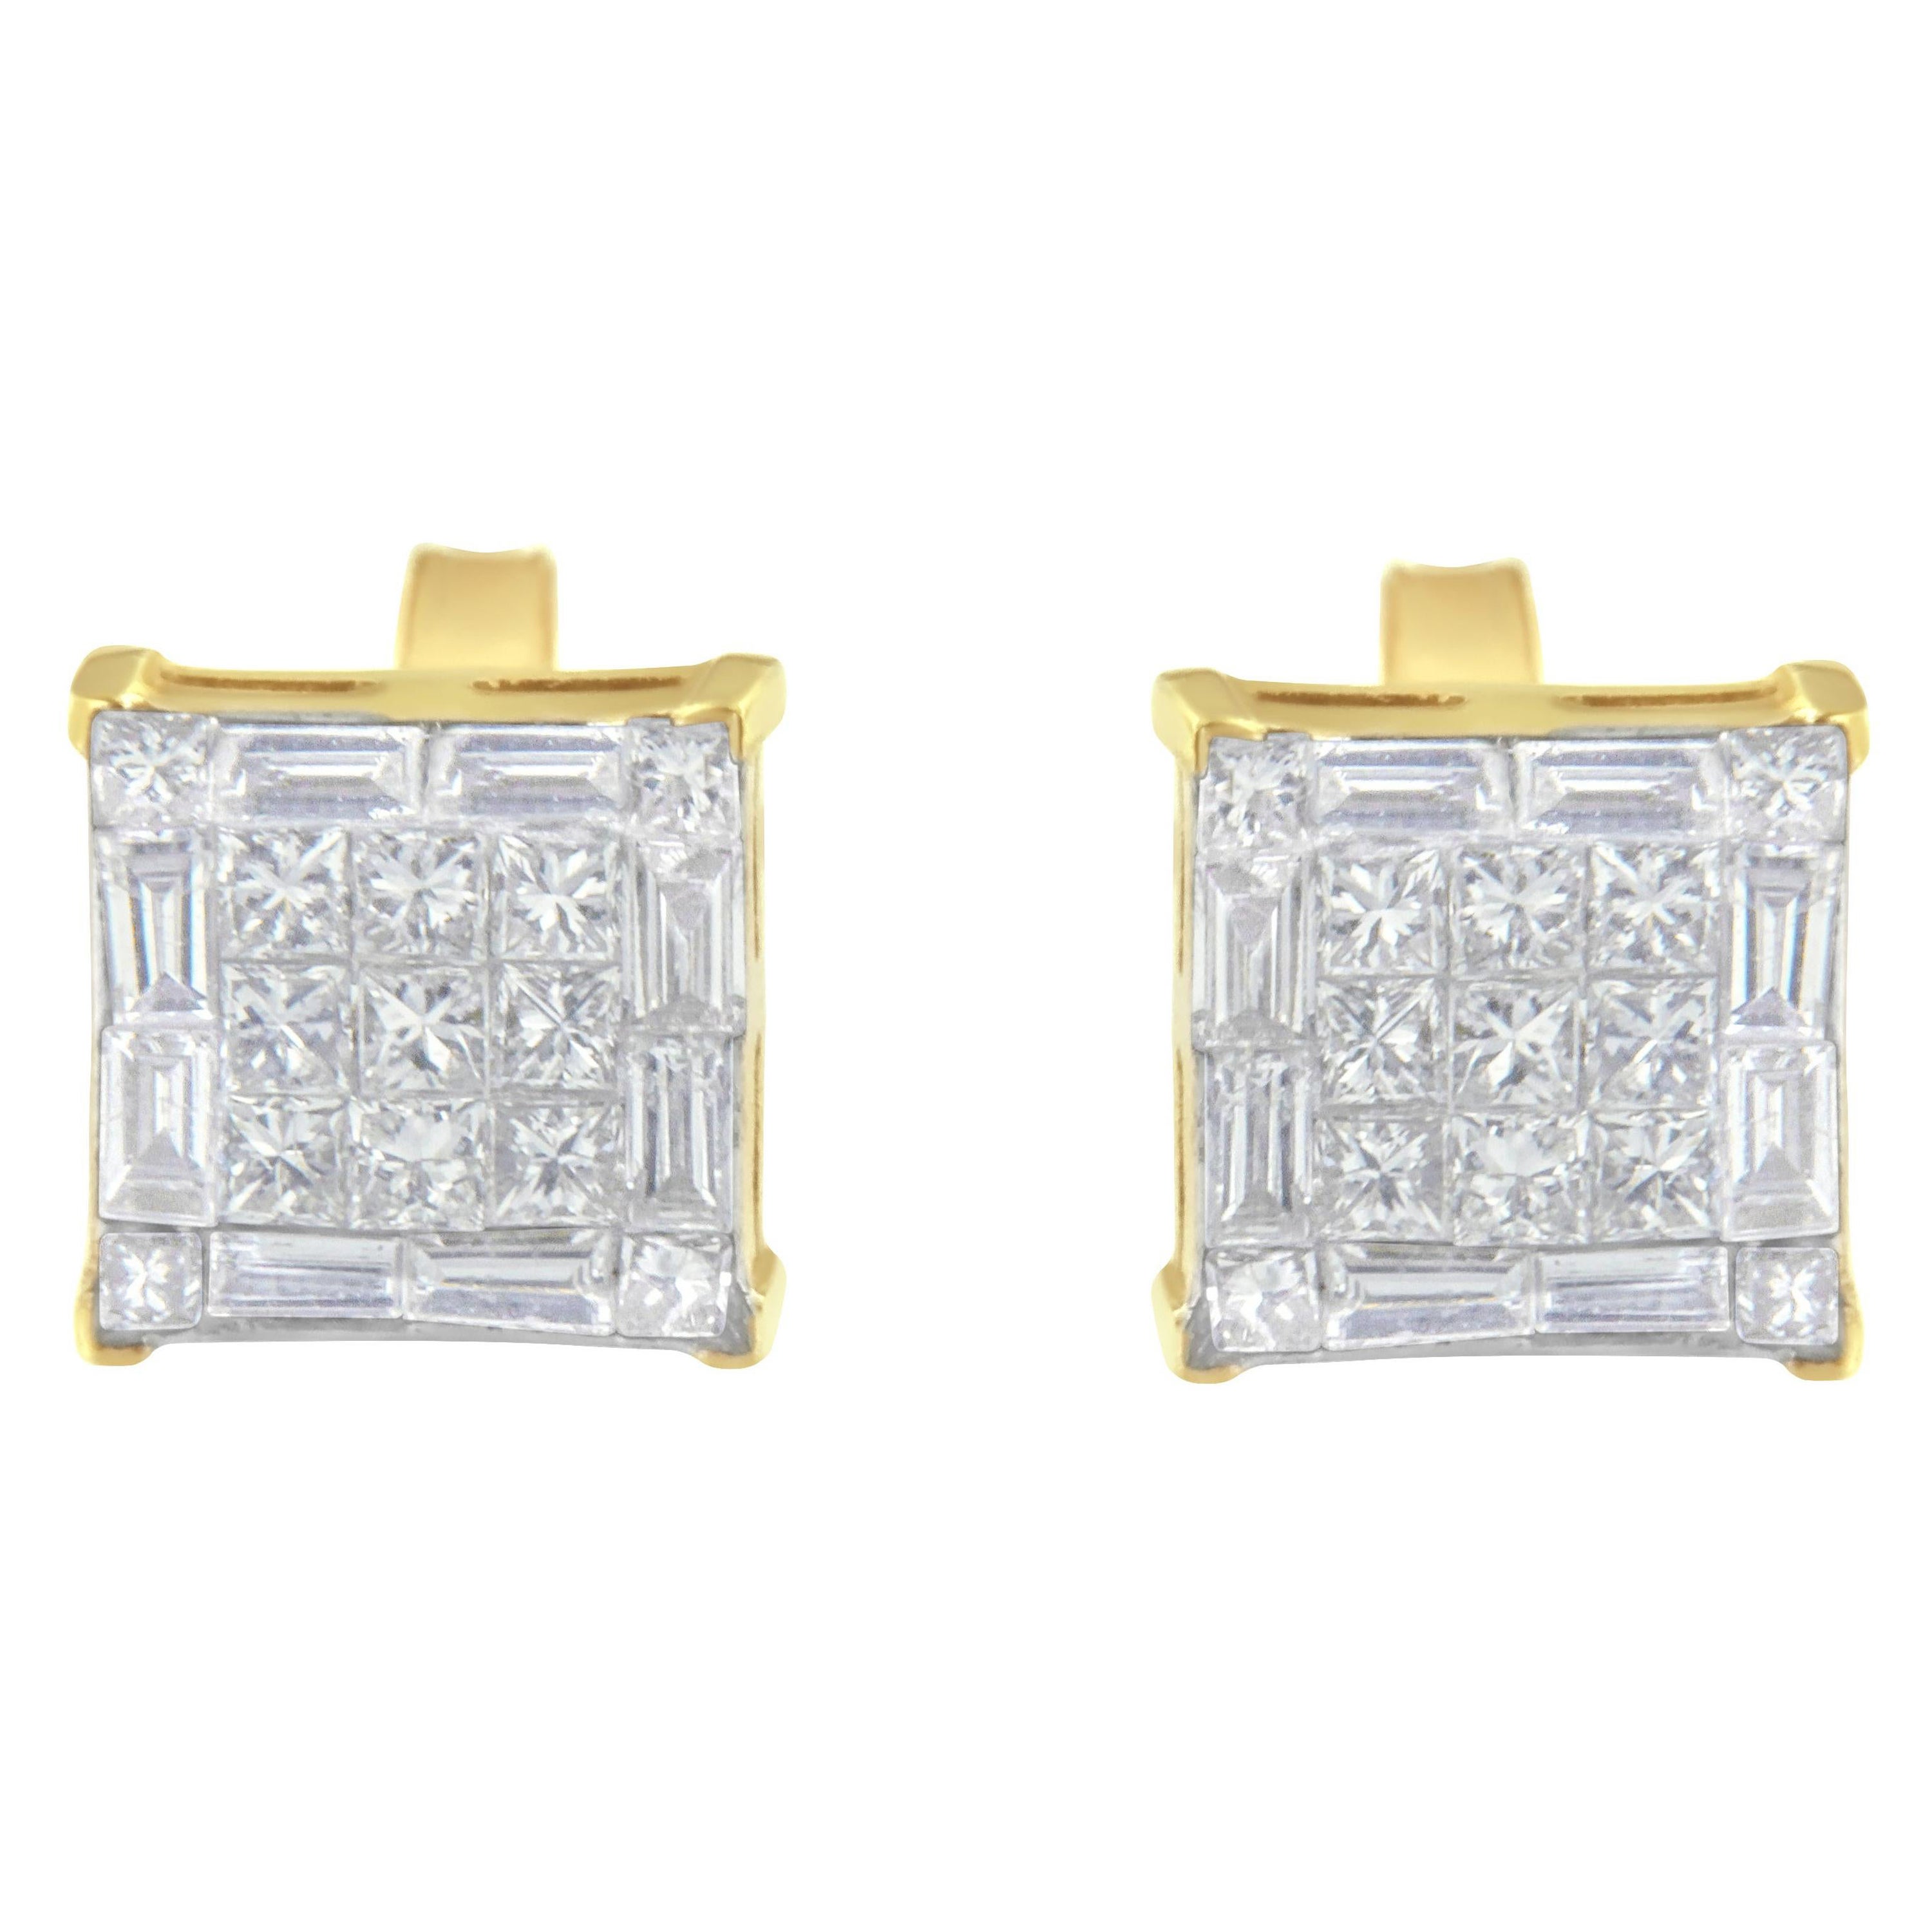 10K Yellow Gold 1.0 Carat Princess Cut Diamond Stud Earrings